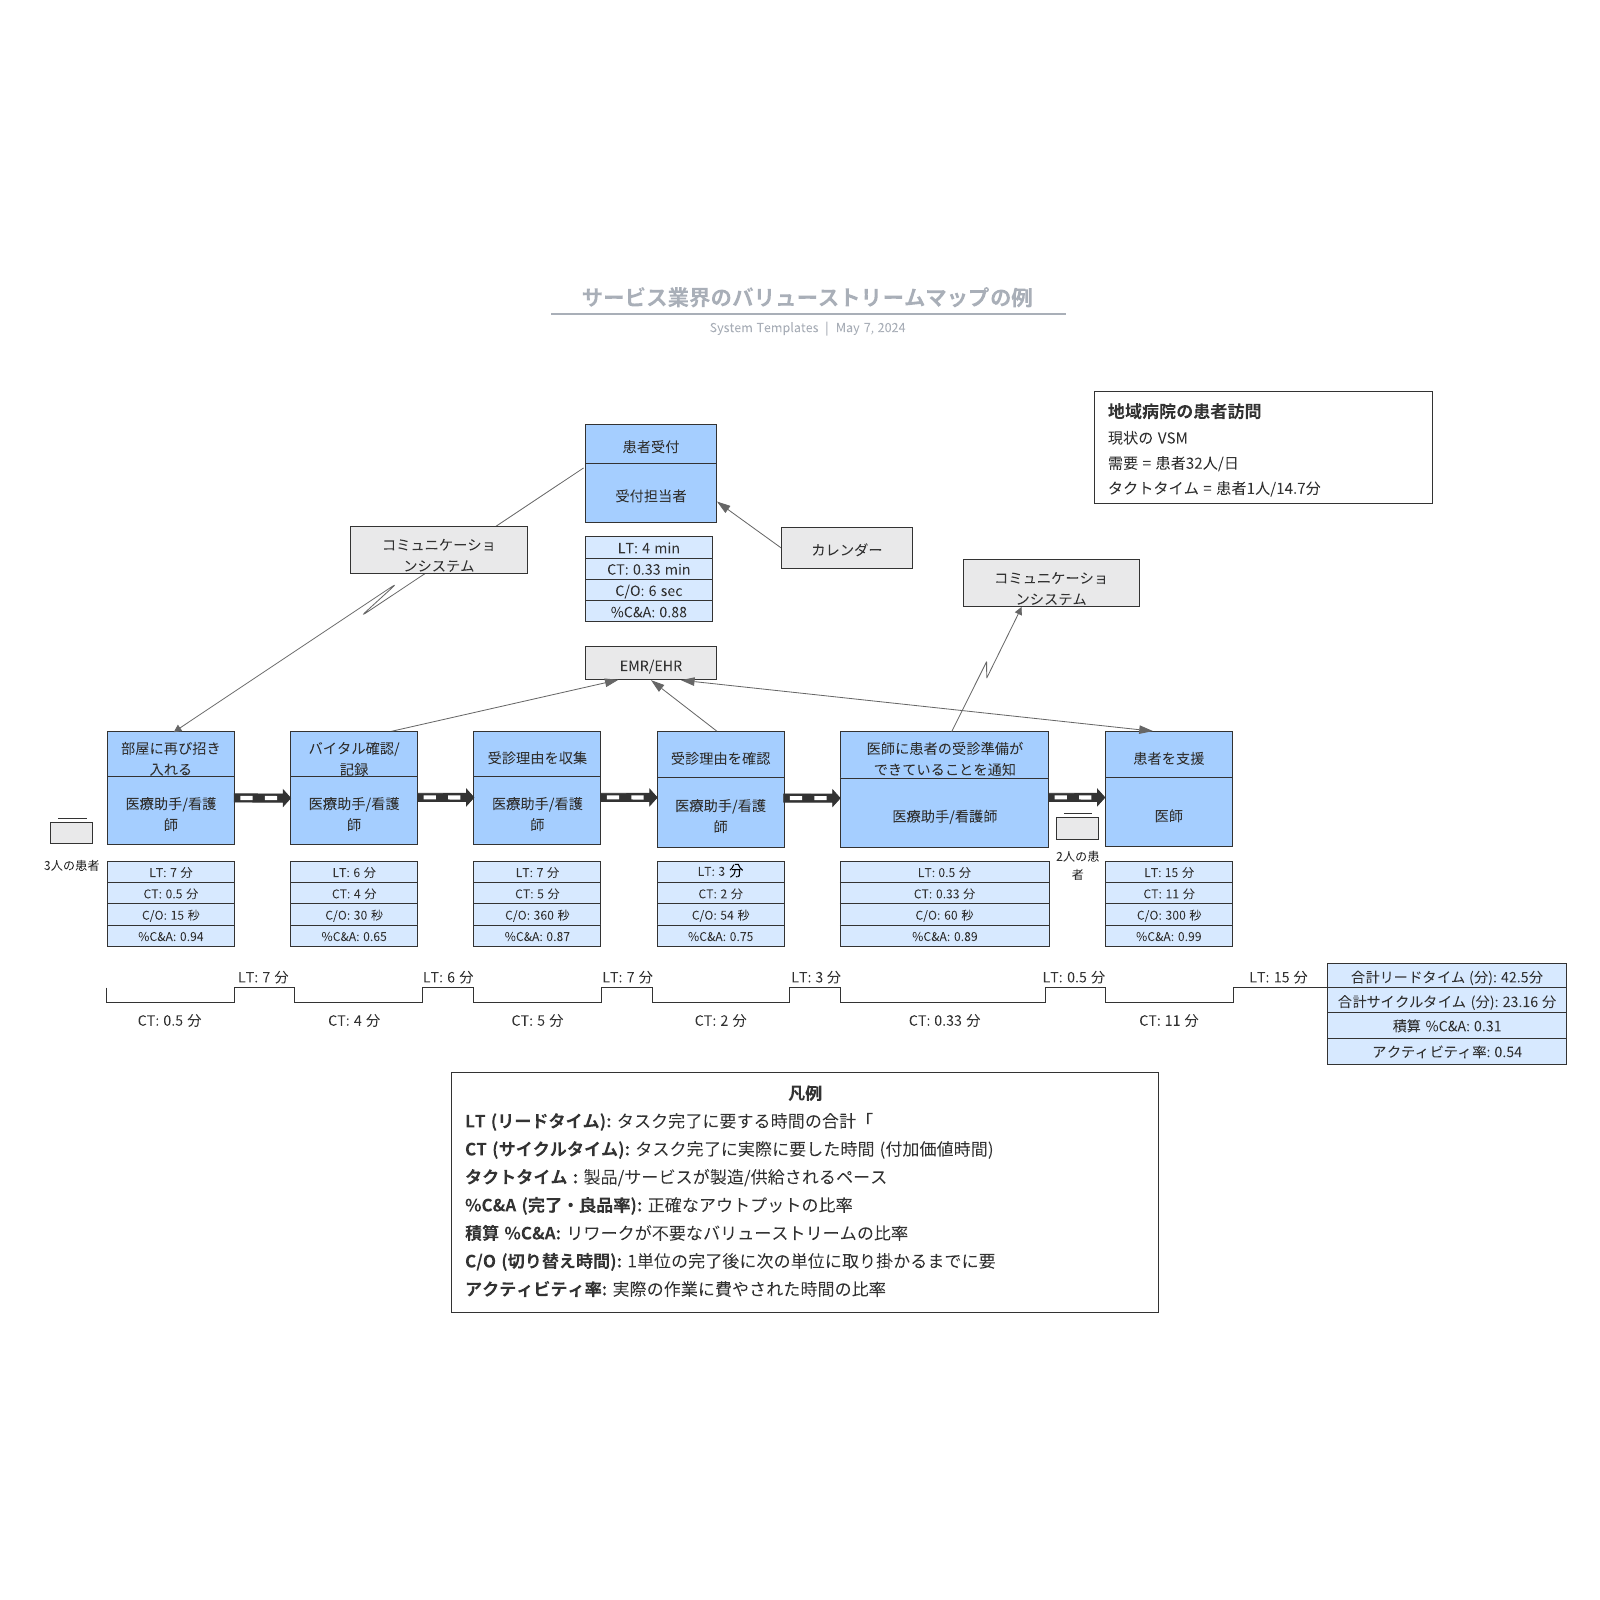 VSMサービス業界のバリューストリームマップの例